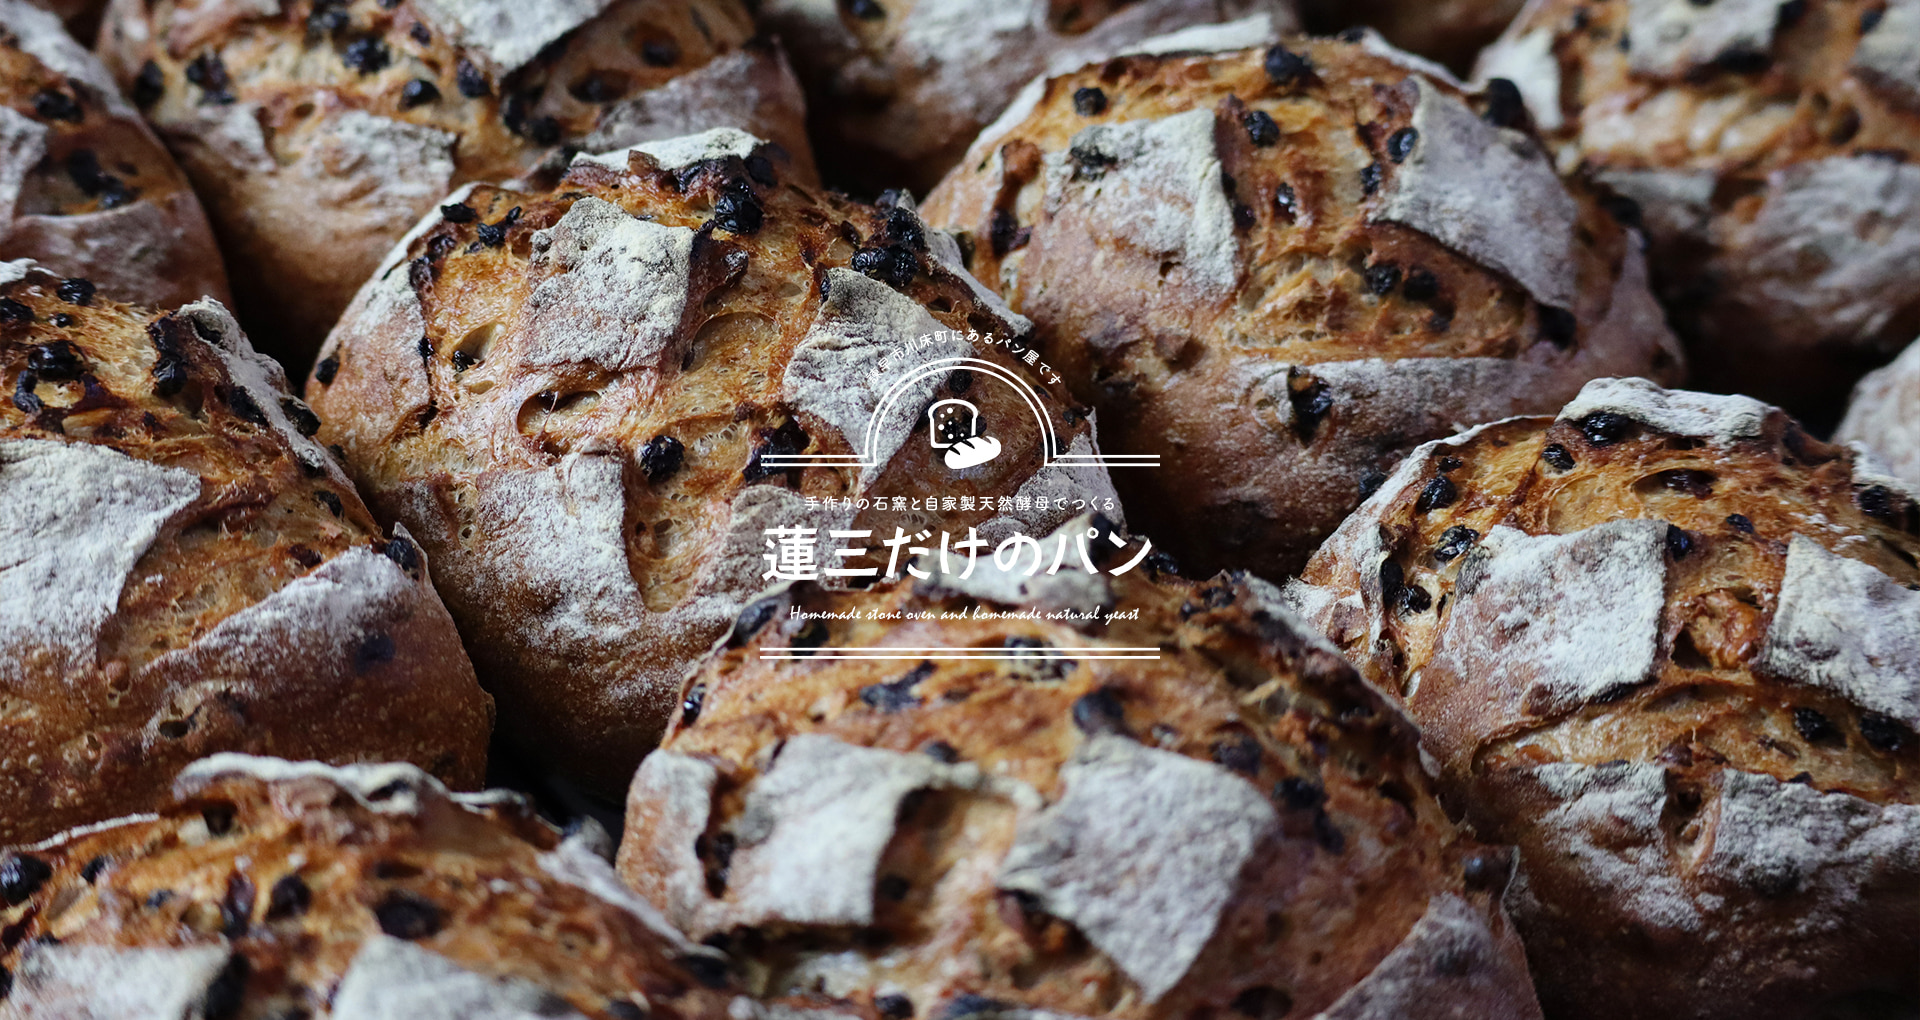 諫早市川床町にあるパン屋です。手作りの石窯と自家製天然酵母でつくる蓮三だけのパン